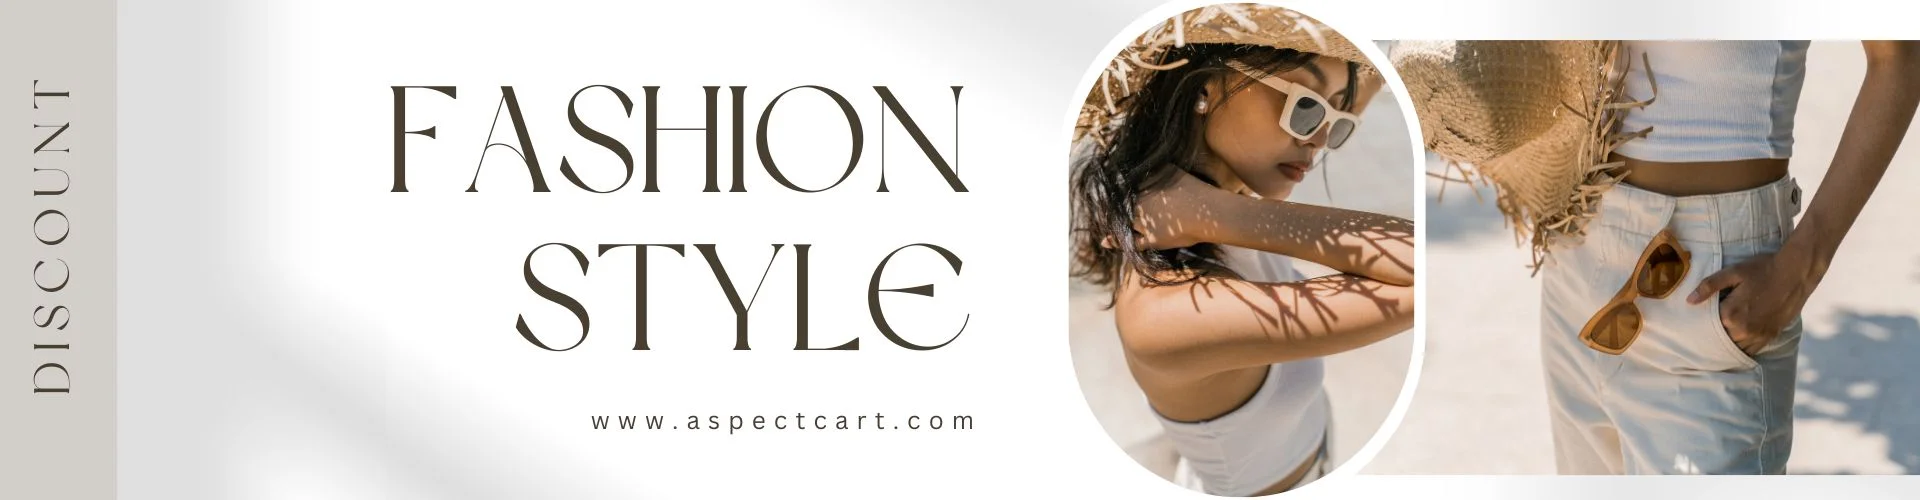 Banner eines Online-Modegeschäfts mit moderner Kleidung und Accessoires